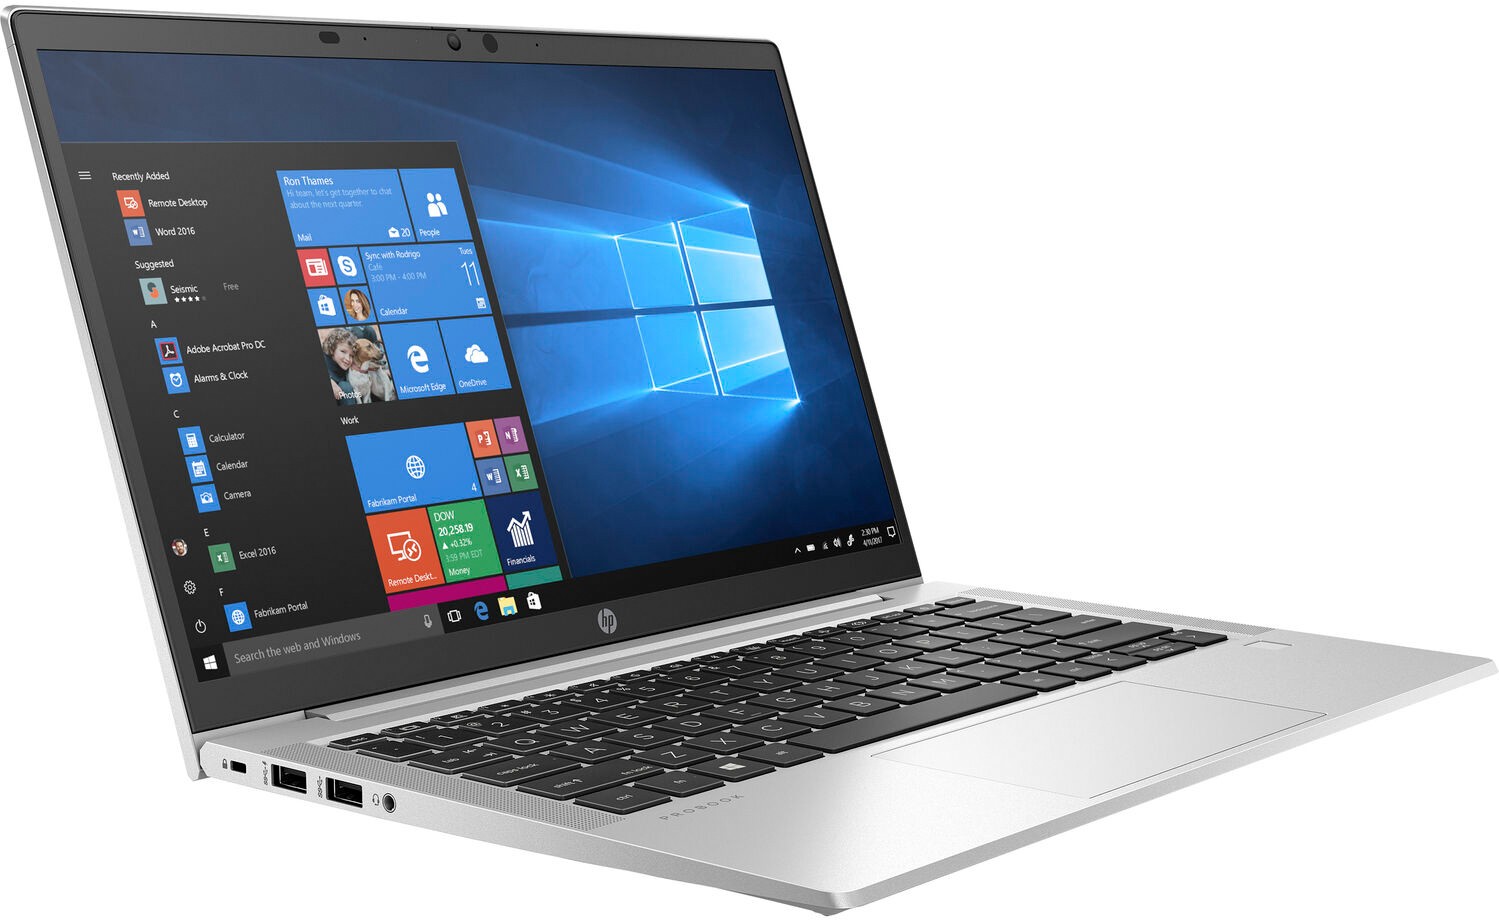 Ноутбук HP ProBook 635 Aero G7 AMD Ryzen 5 4500U 2.3GHz,13.3" FHD (1920x1080) IPS AG,8Gb DDR4-3200MHz(1),256Gb SSD NVMe,Al+Mg Case,53Wh LL FC,FPS,Kbd Bl+SR,0.99kg,1yw,Win10Pro-39383